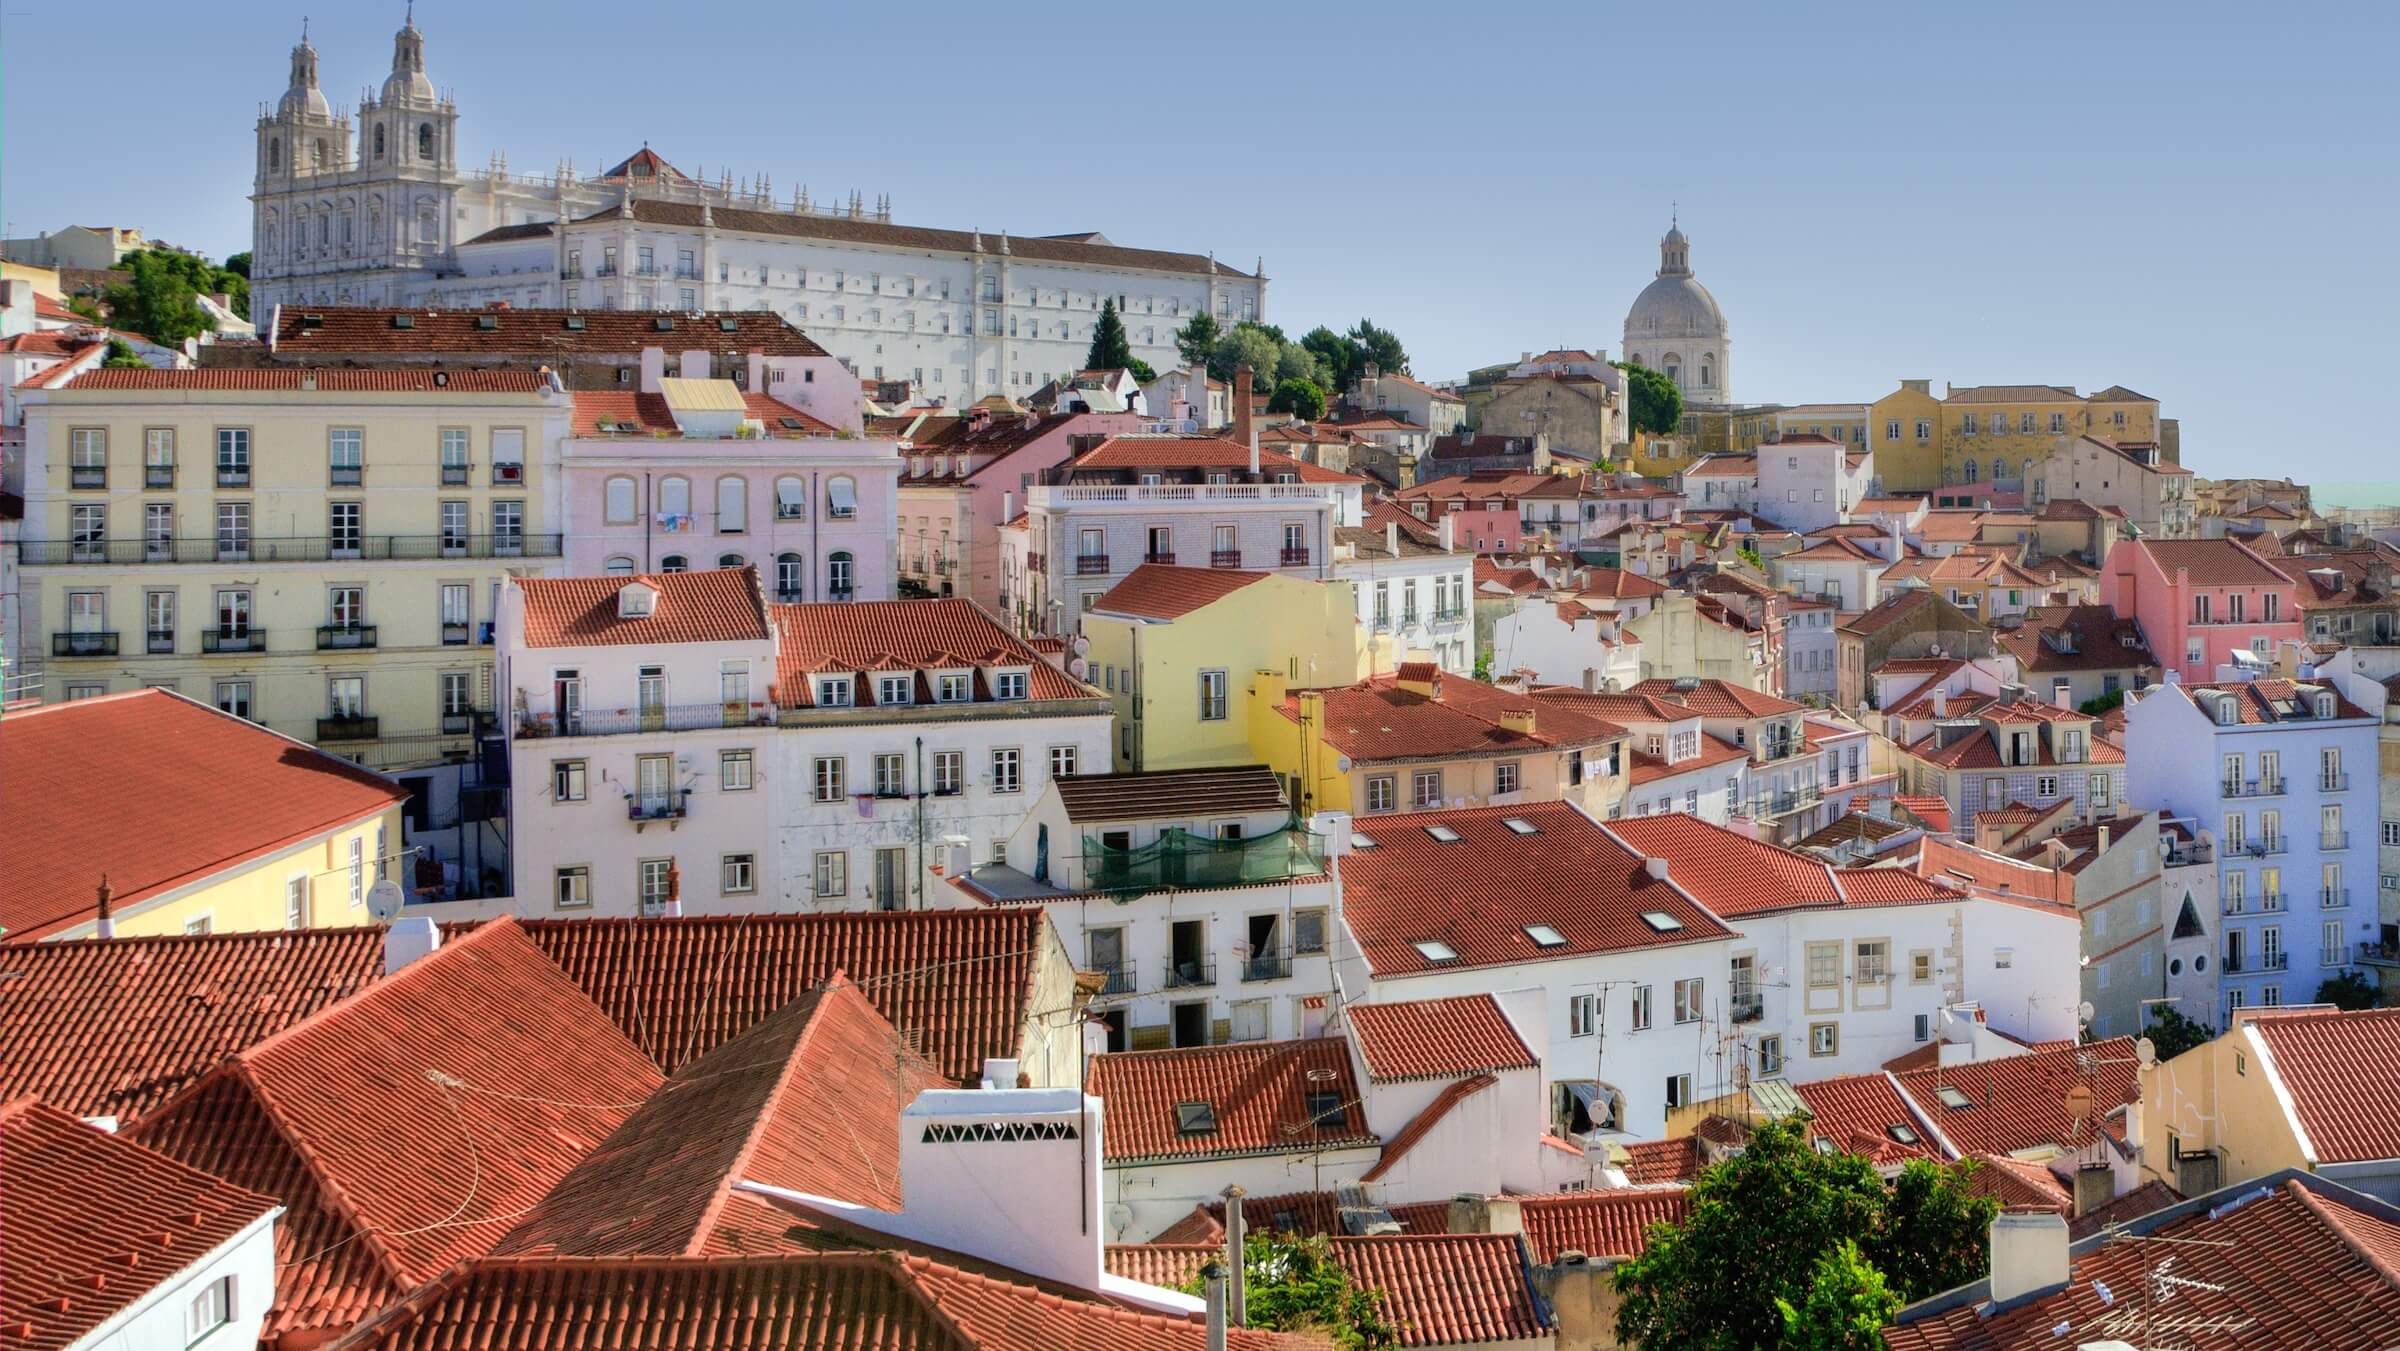 Onde ficar em Lisboa